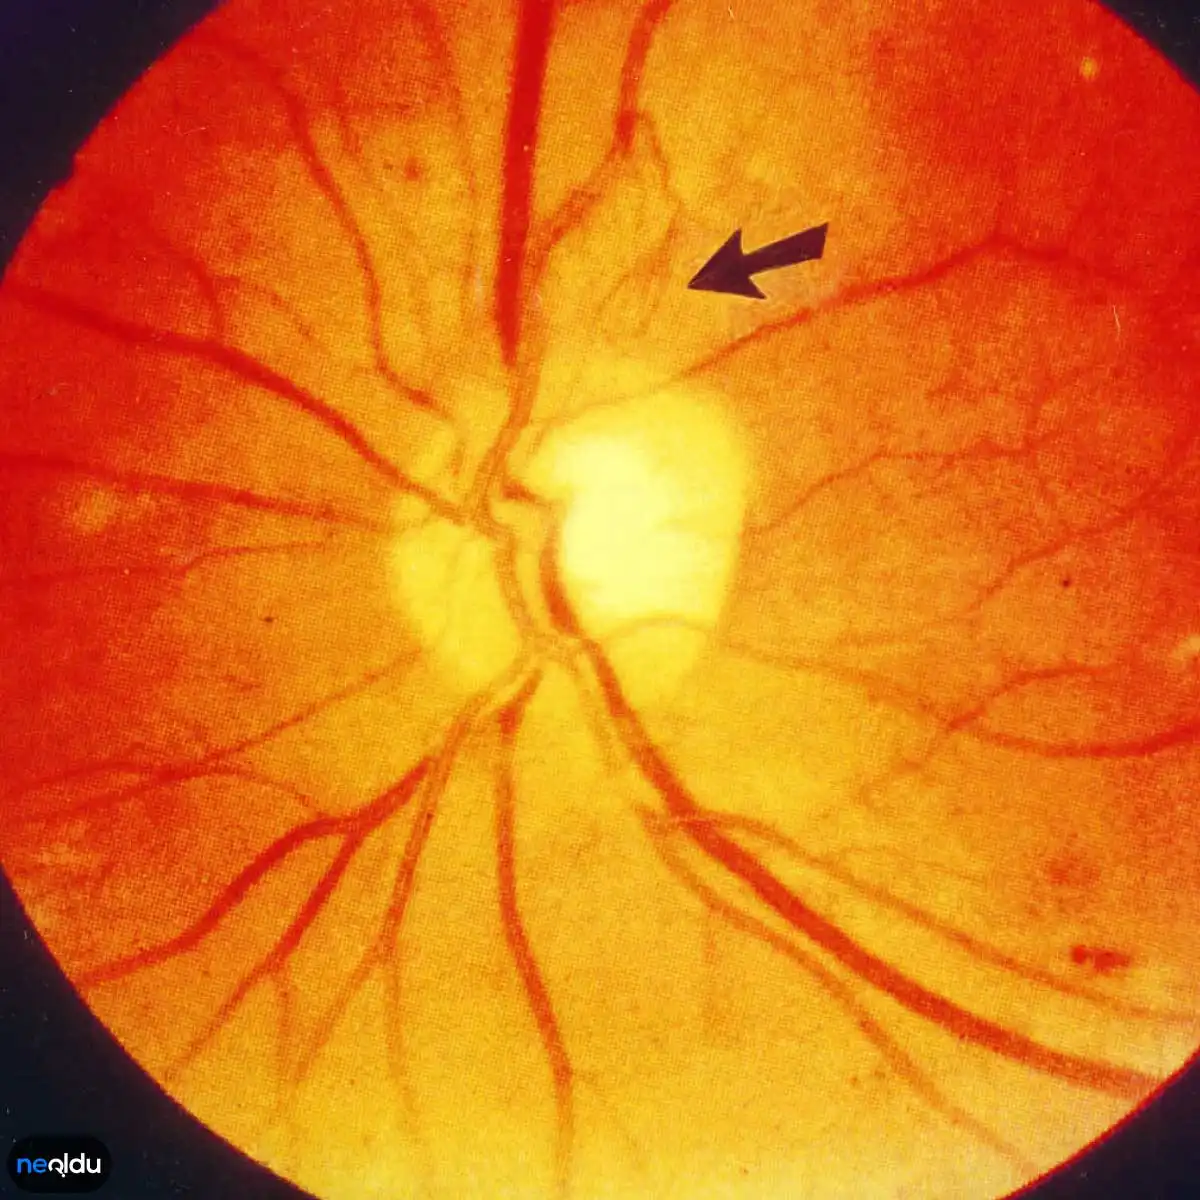 Сетчатки обоих глаз. Ирма диабетическая ретинопатия. Диабетическая ангиопатия сетчатки. Непролиферативная диабетическая ретинопатия Ирма. Микроаневризмы Лебера.